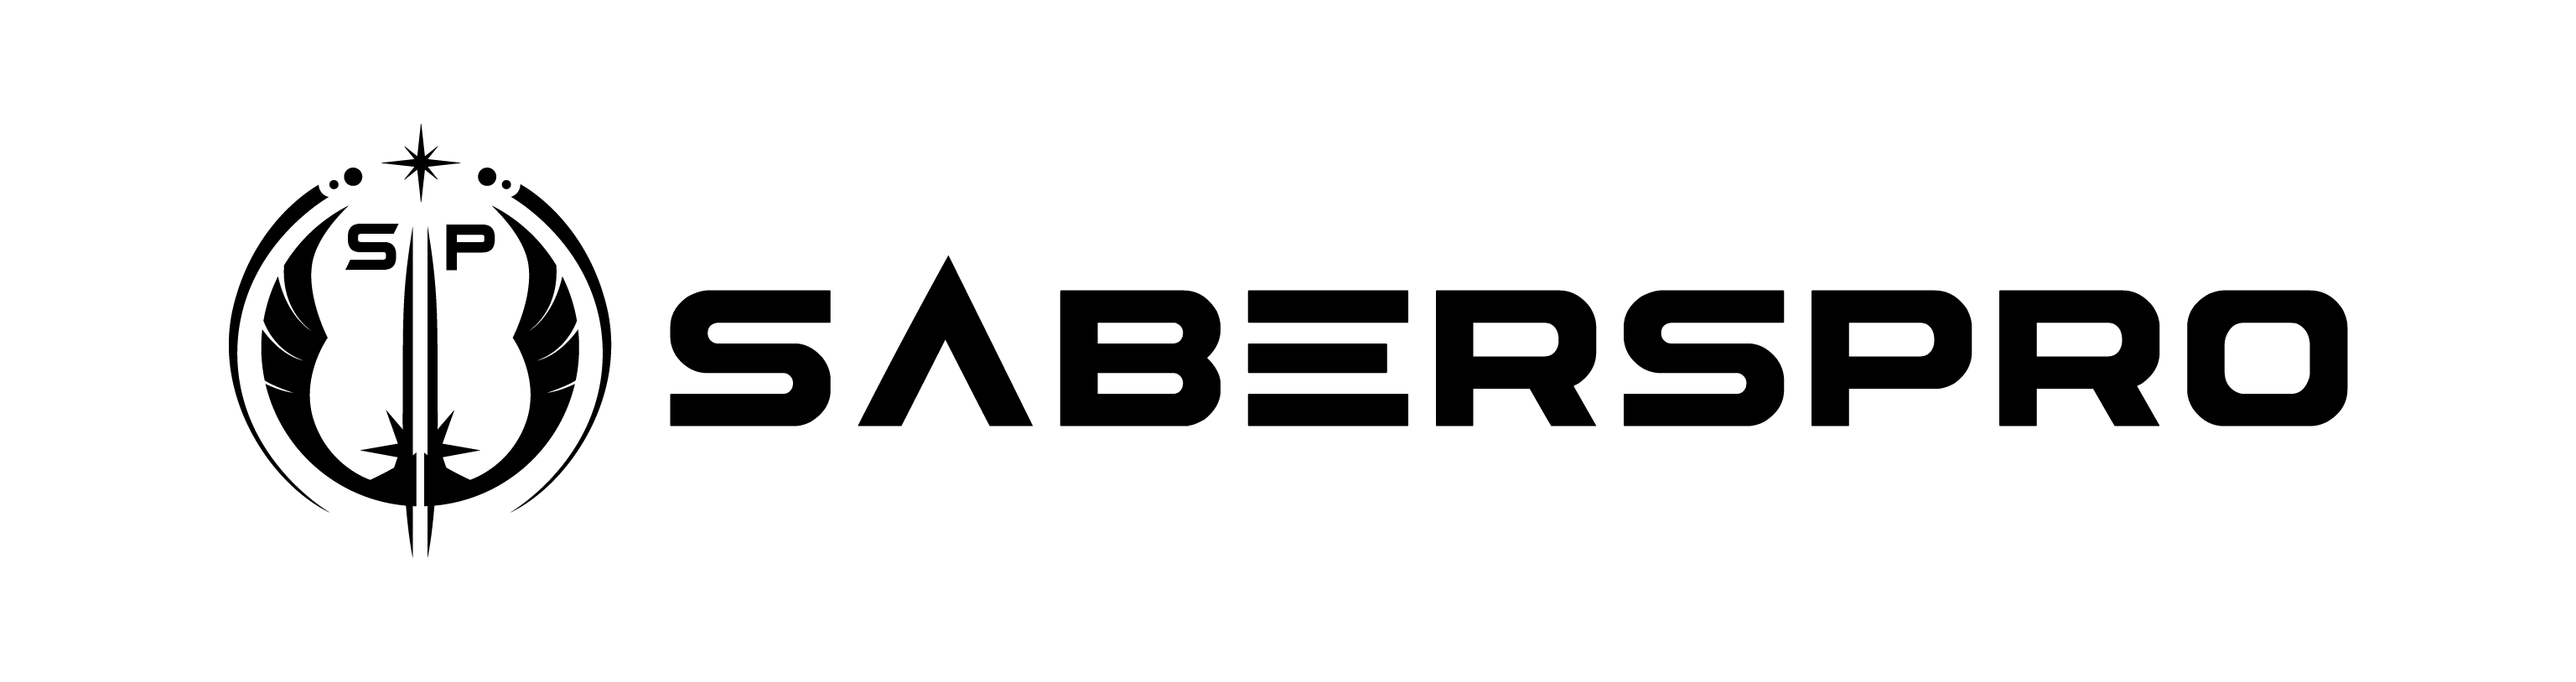 SabersPro logo